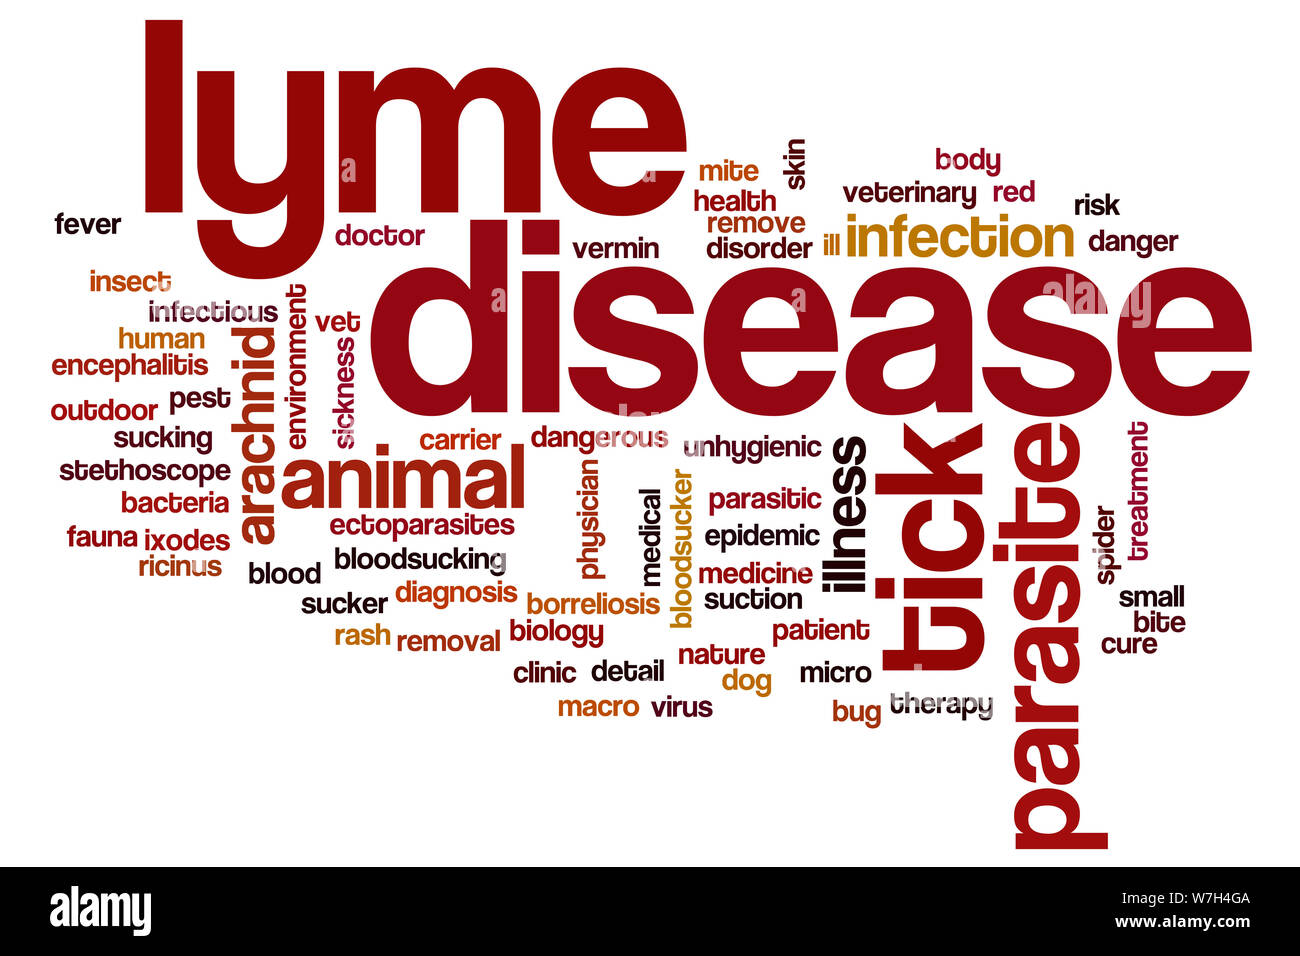 Lyme disease word cloud Stock Photo